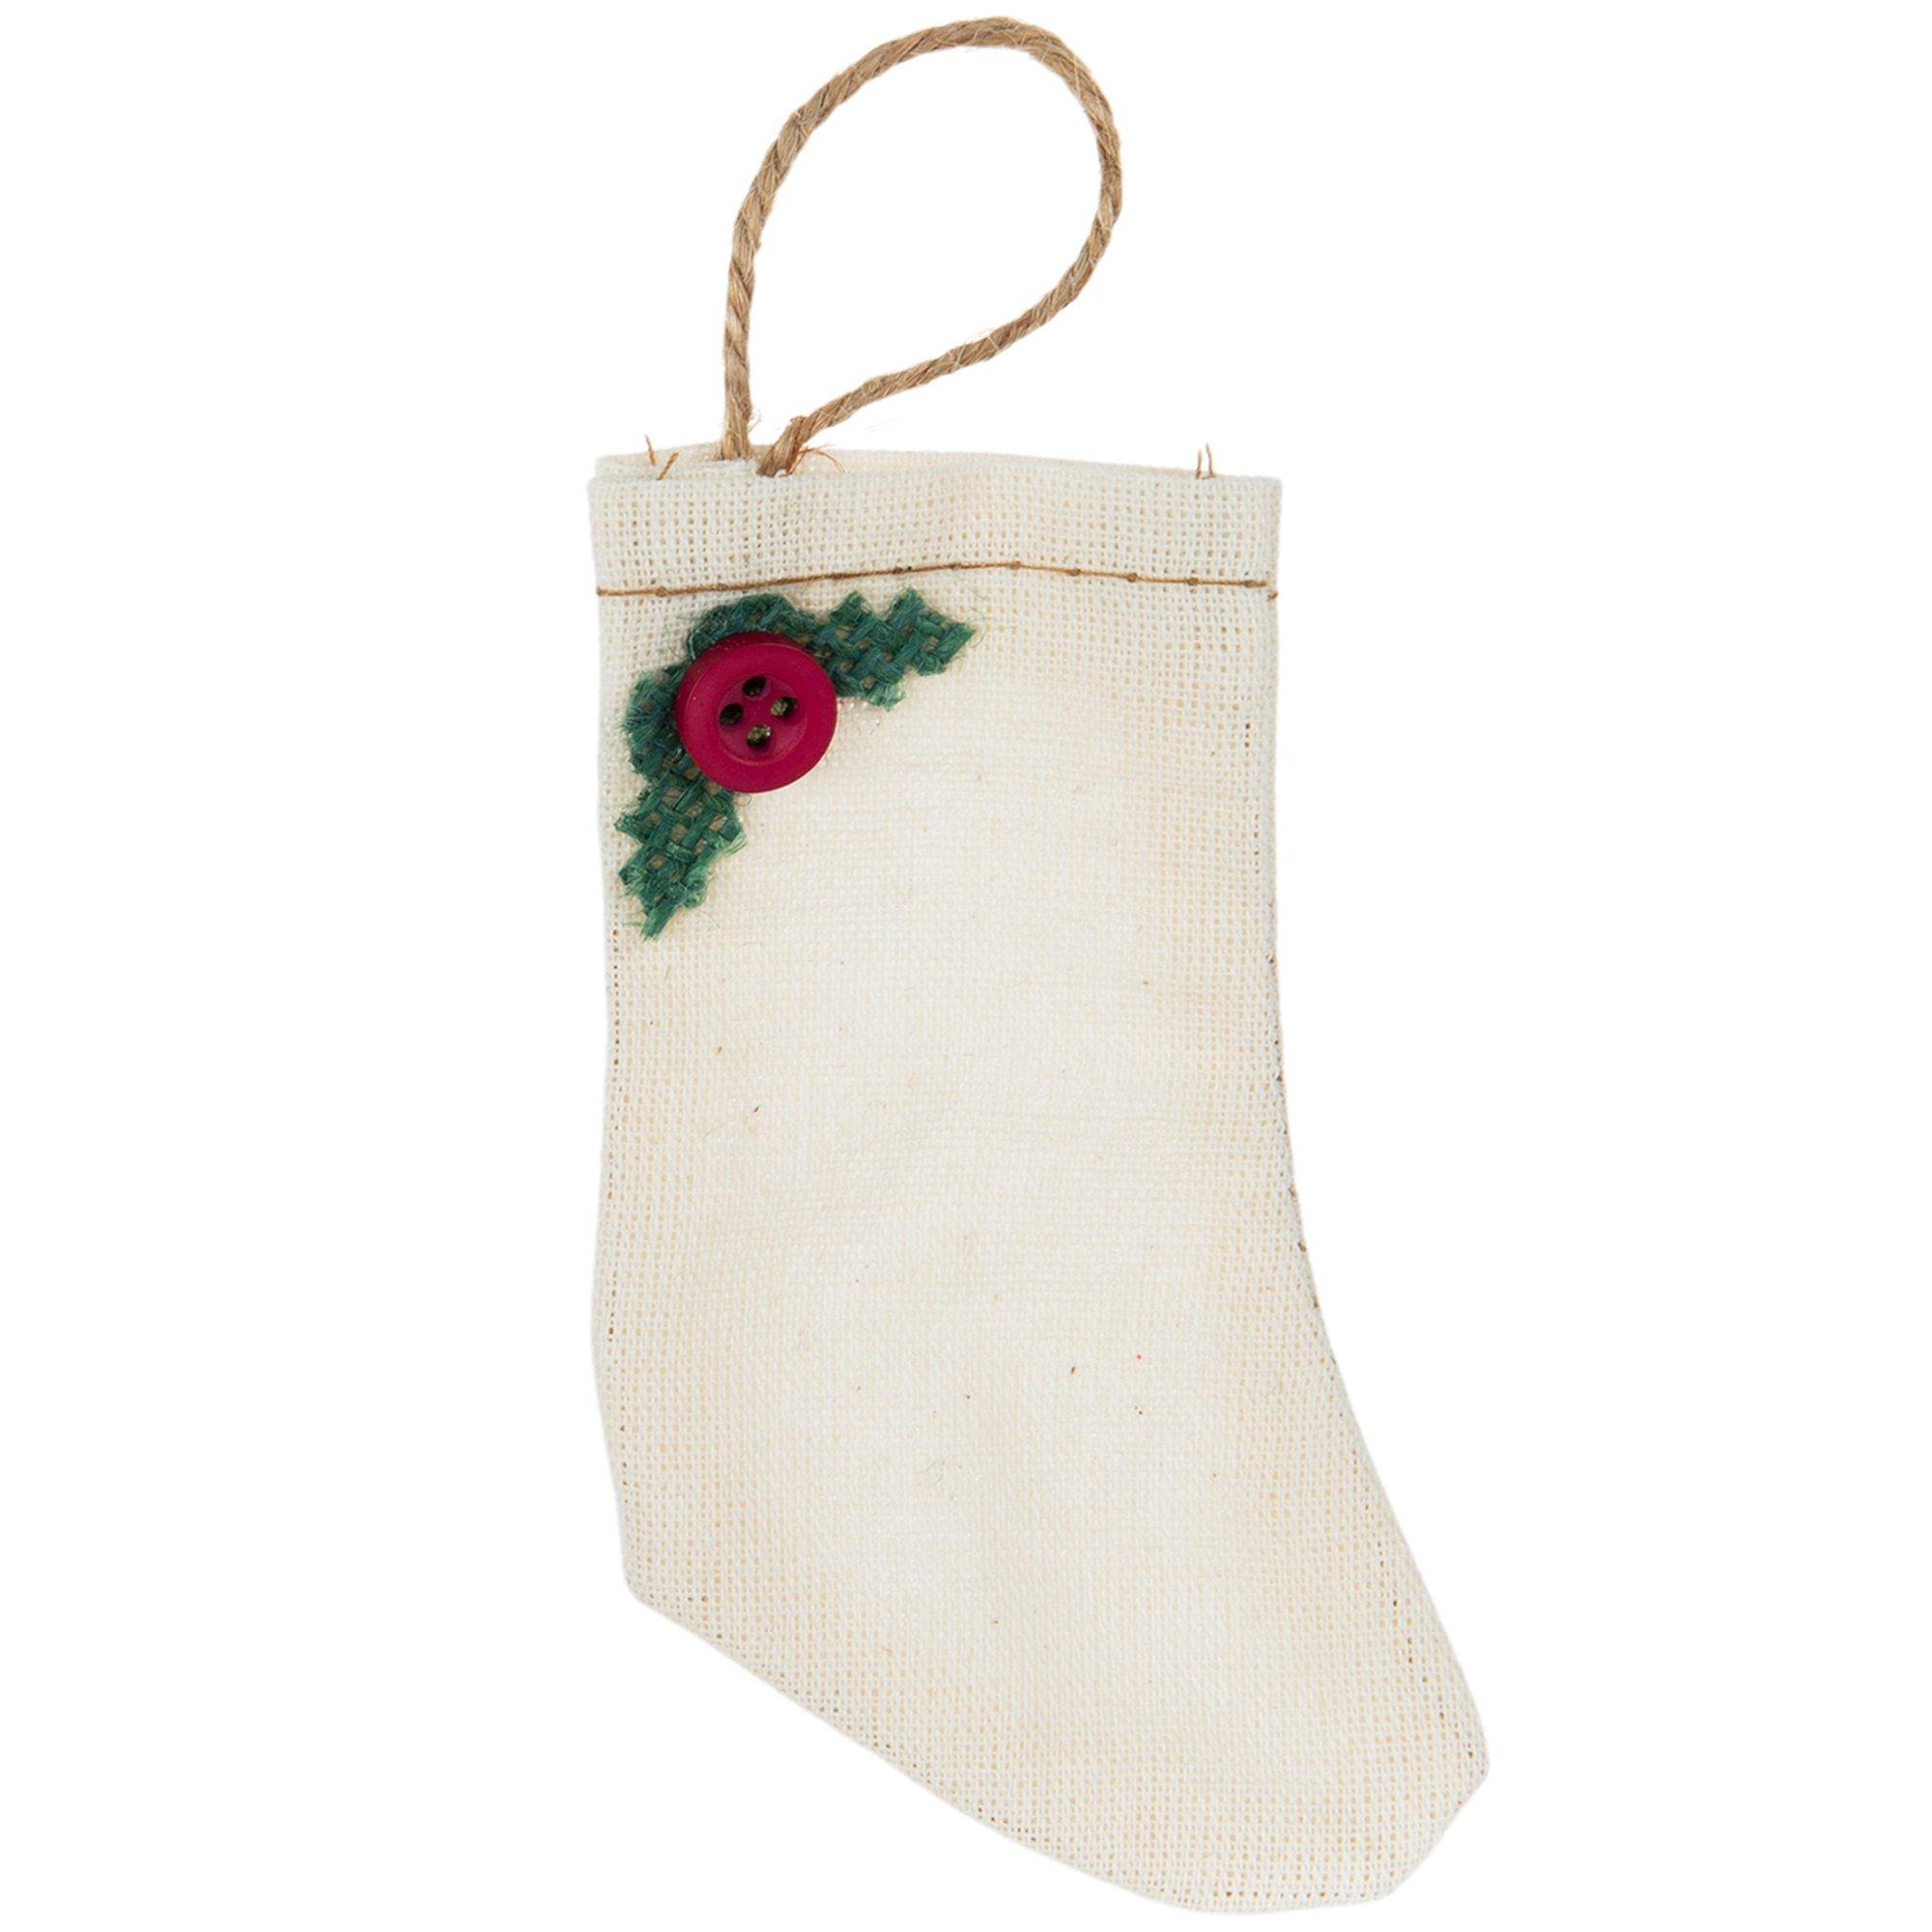 Hobbii - Time for Christmas stockings ❤️💚 With Christmas